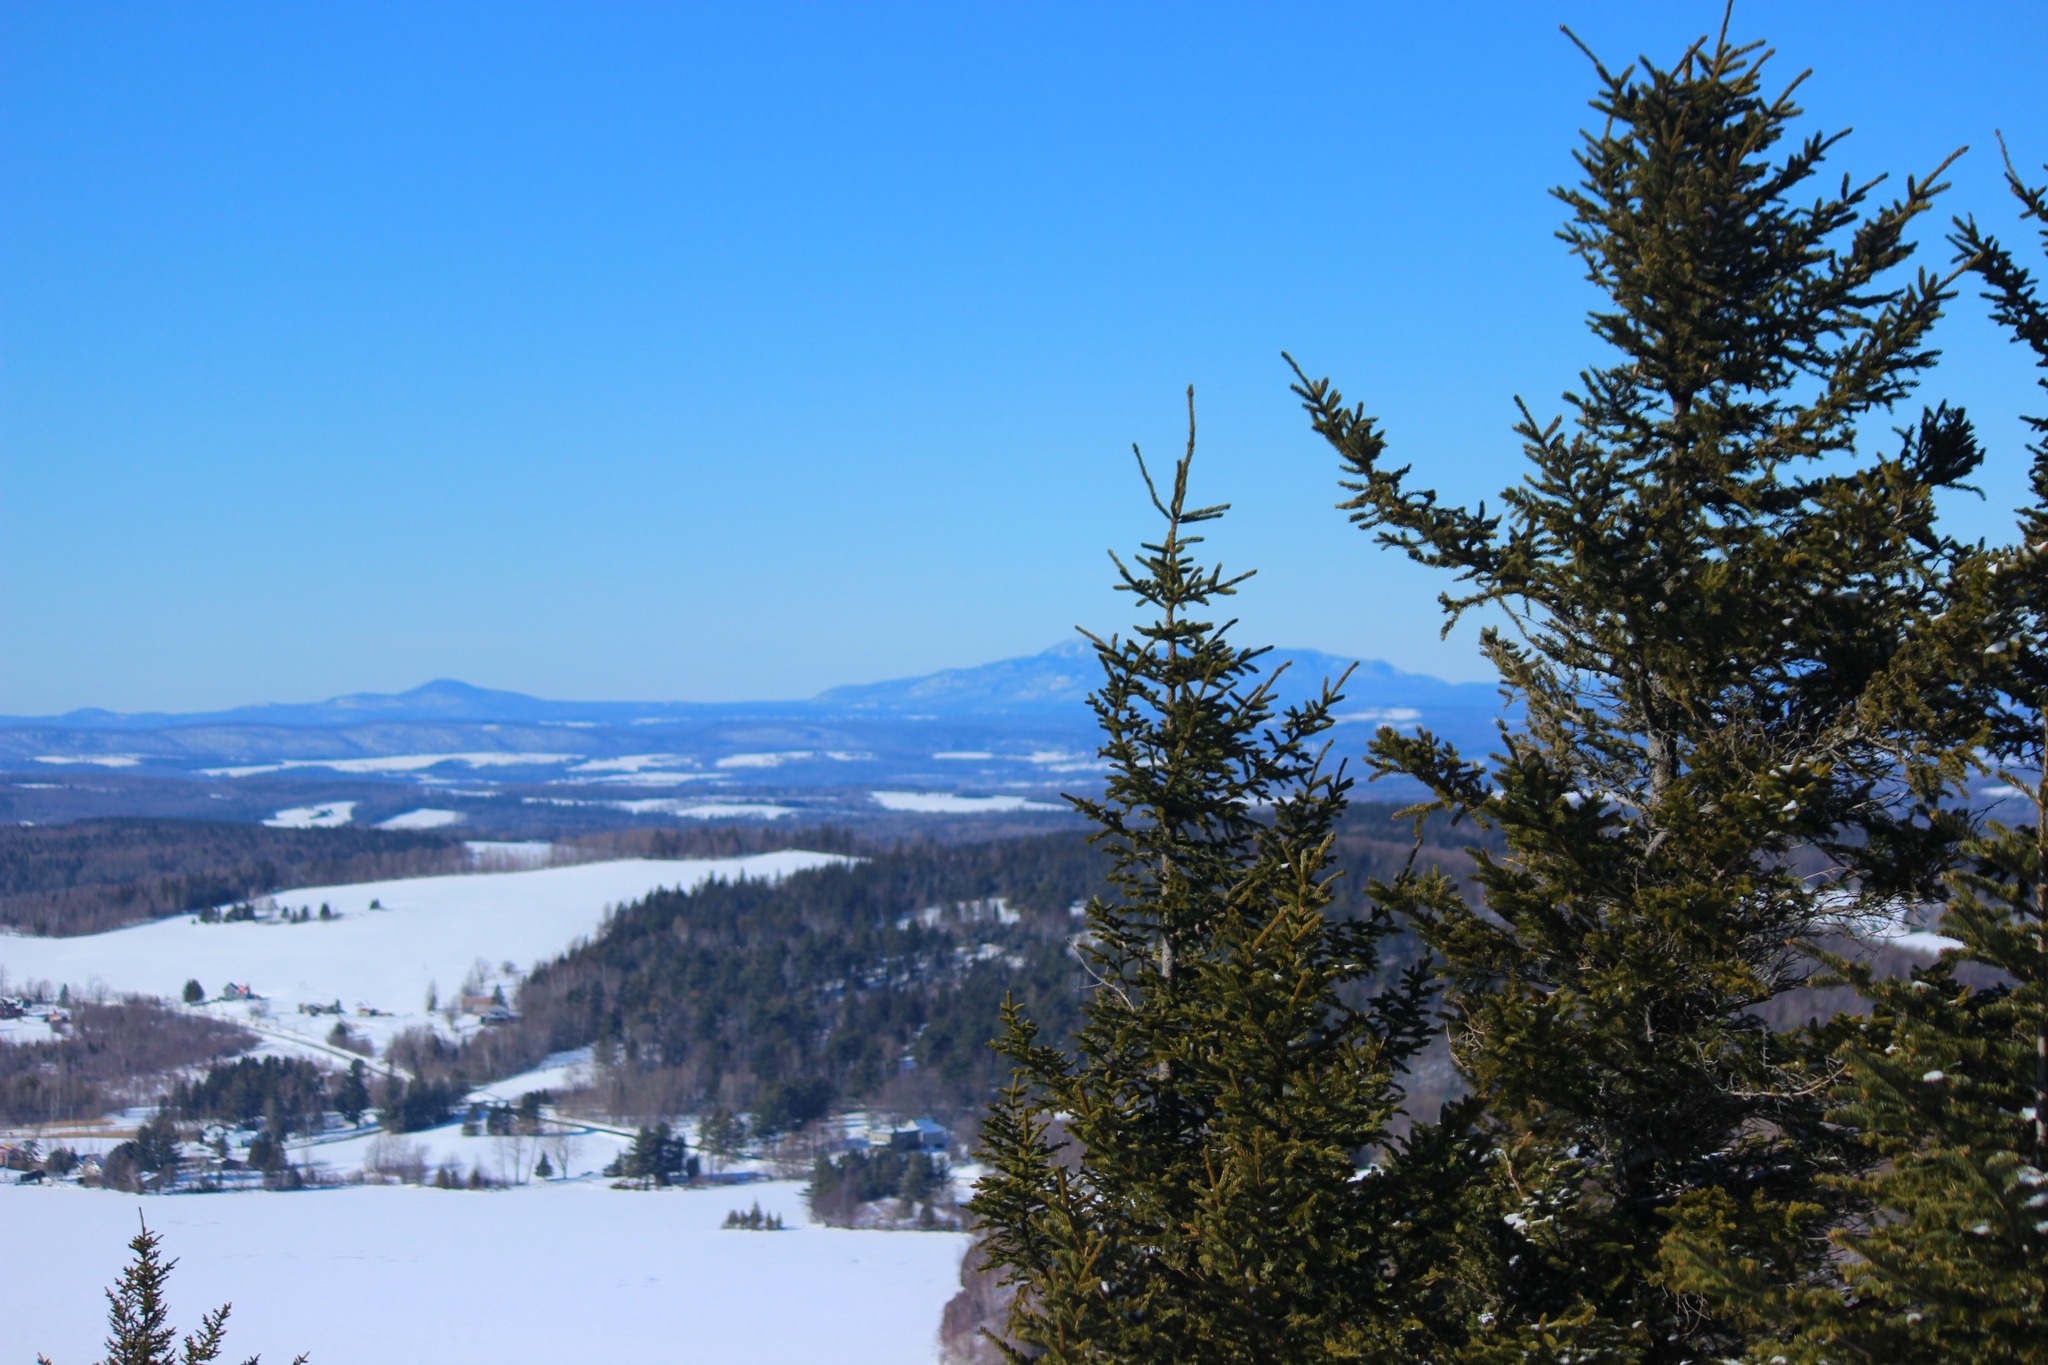 Pinnacle Mountain apre i suoi sentieri in inverno per il secondo anno